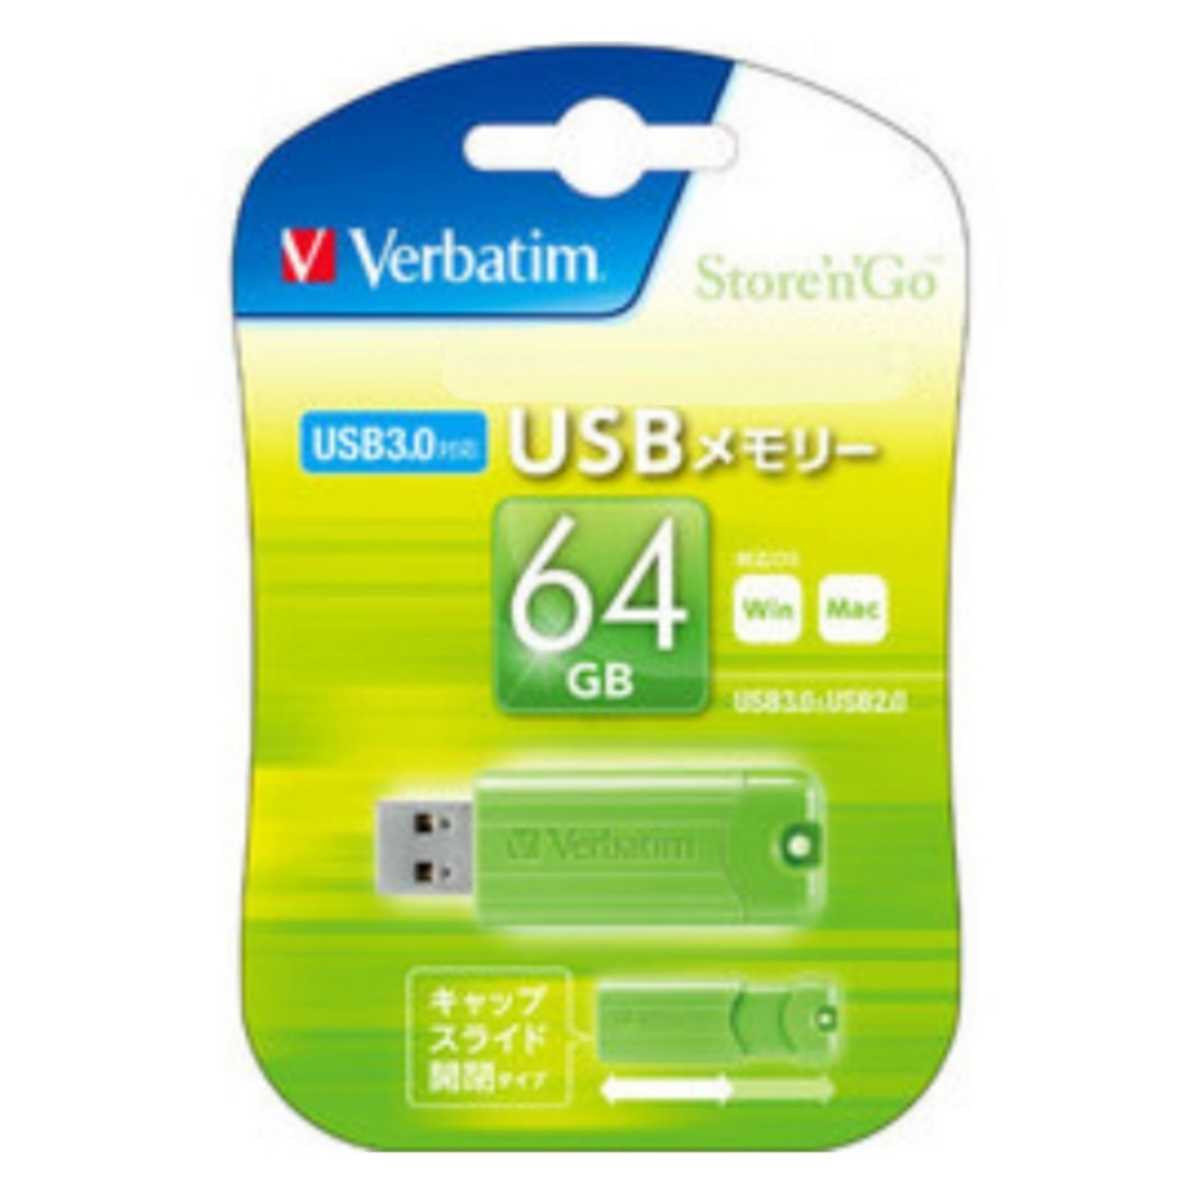 スライド式USB3.0メモリー64GB(Verbatim)USBSPS64GGV1【1円スタート出品・新品・送料無料】の画像1